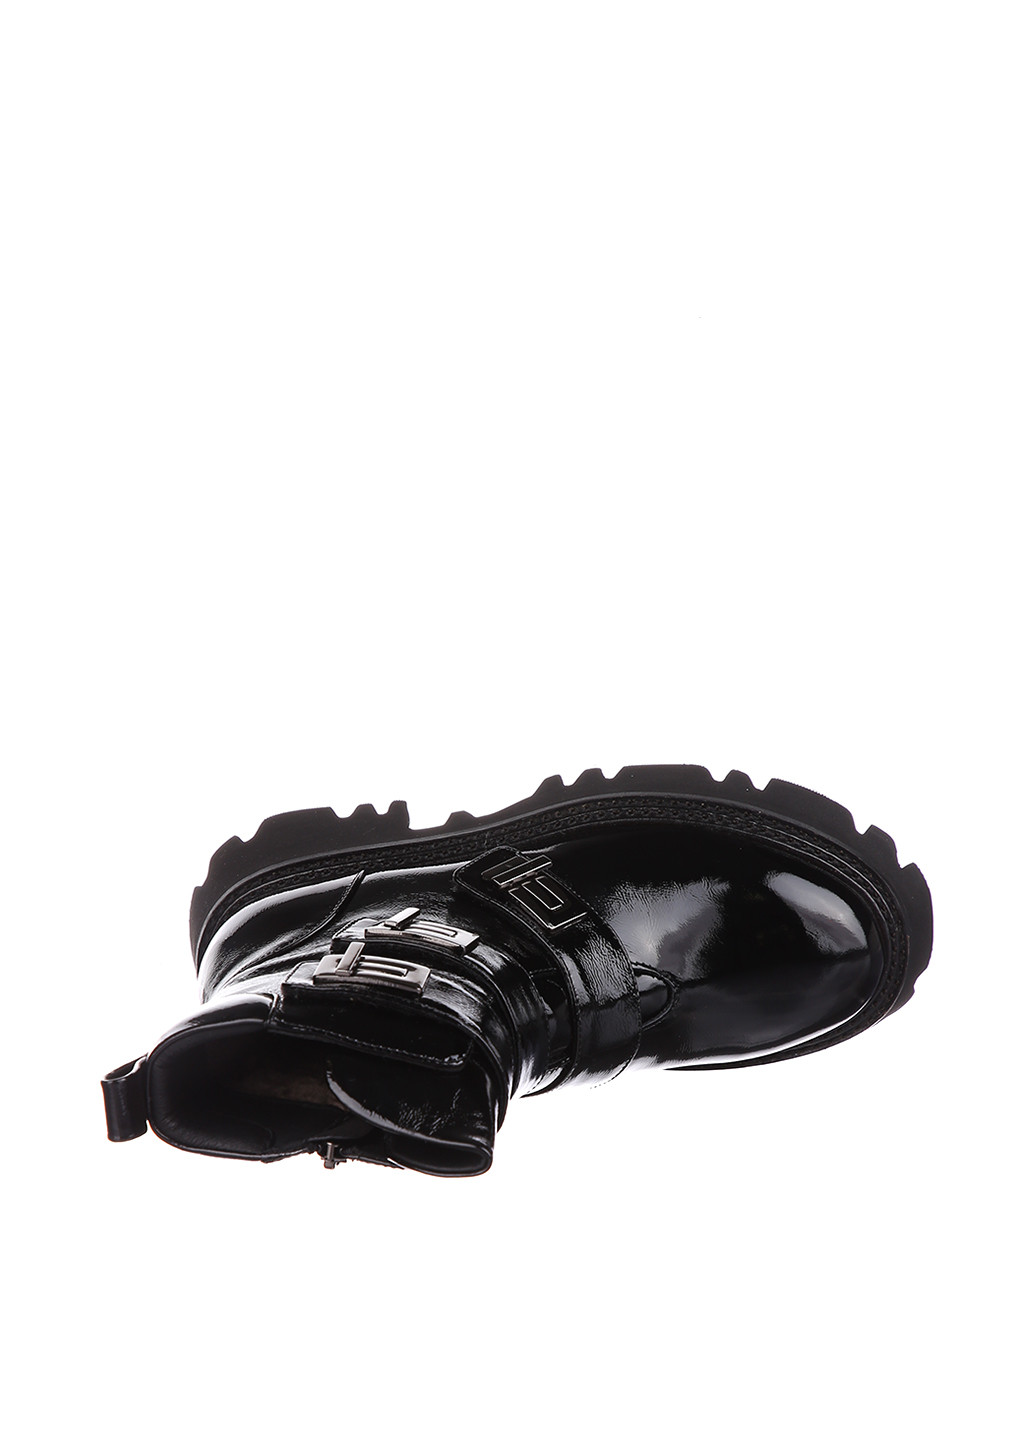 Зимние ботинки Blizzarini на тракторной подошве, с пряжкой, лаковые